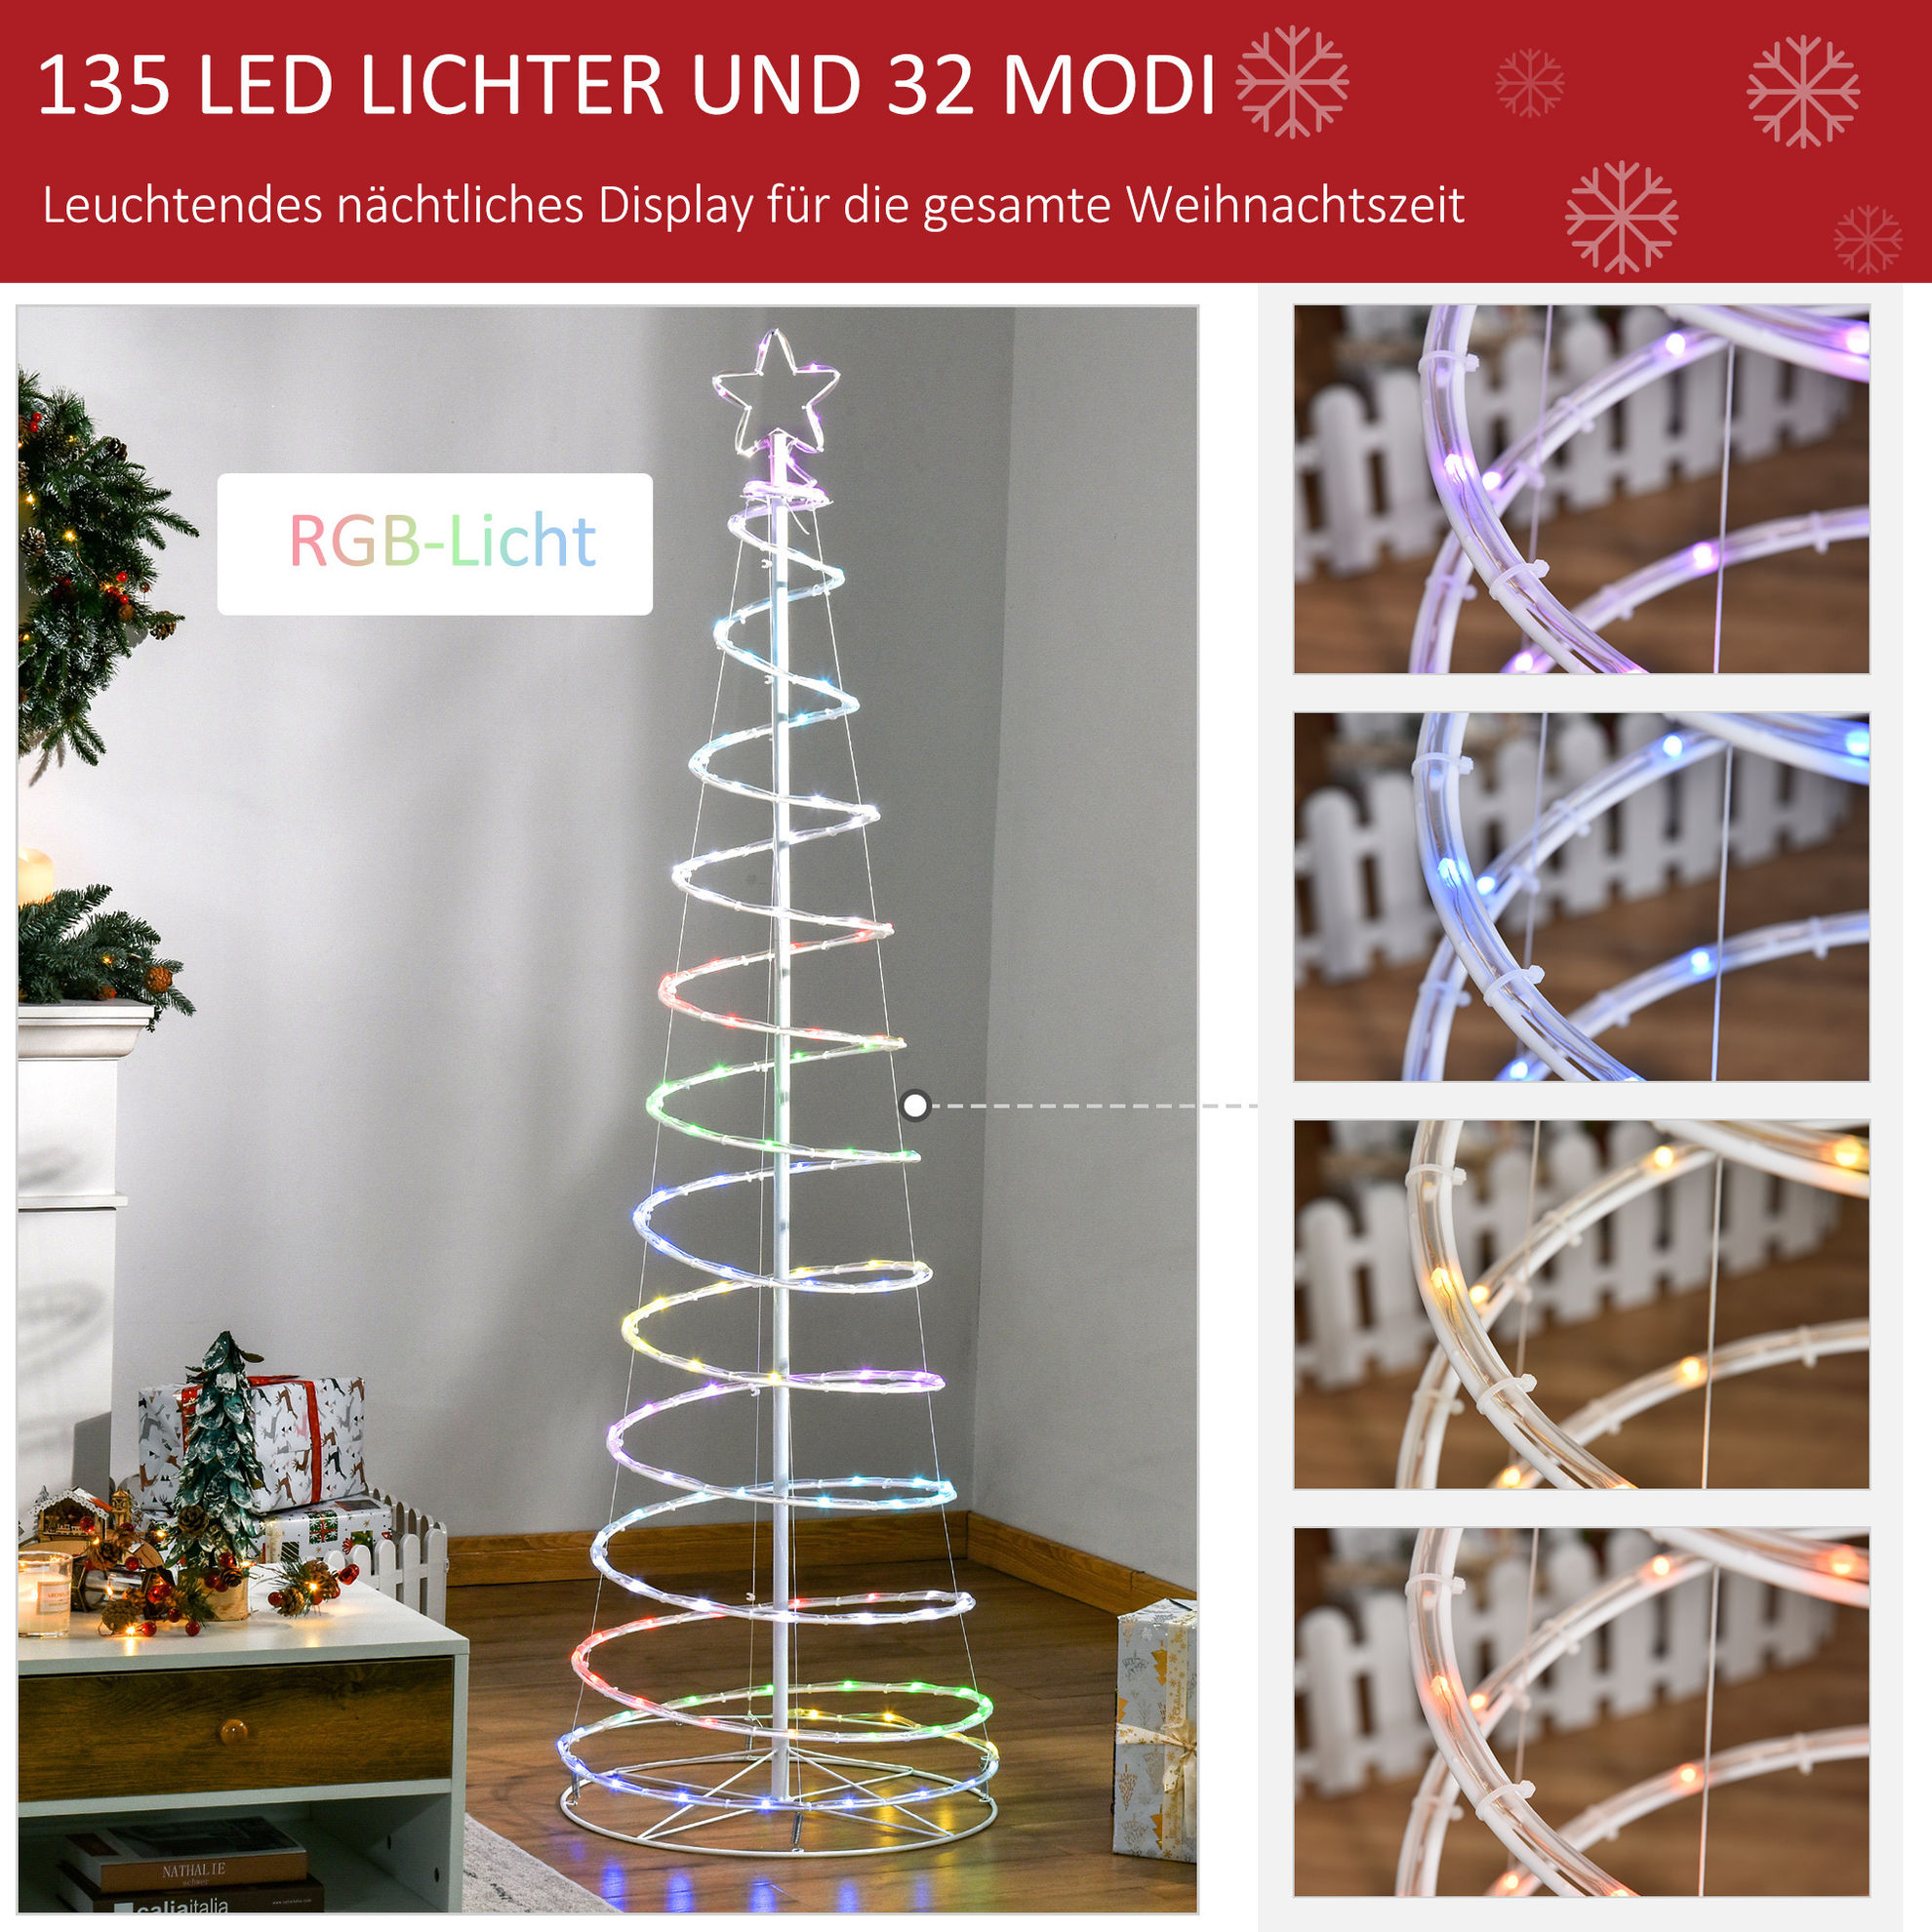 Spiralbaum LED 135 LED-Lichter und 32 Modi RGB-Licht, ist  spritzwassergeschützt.